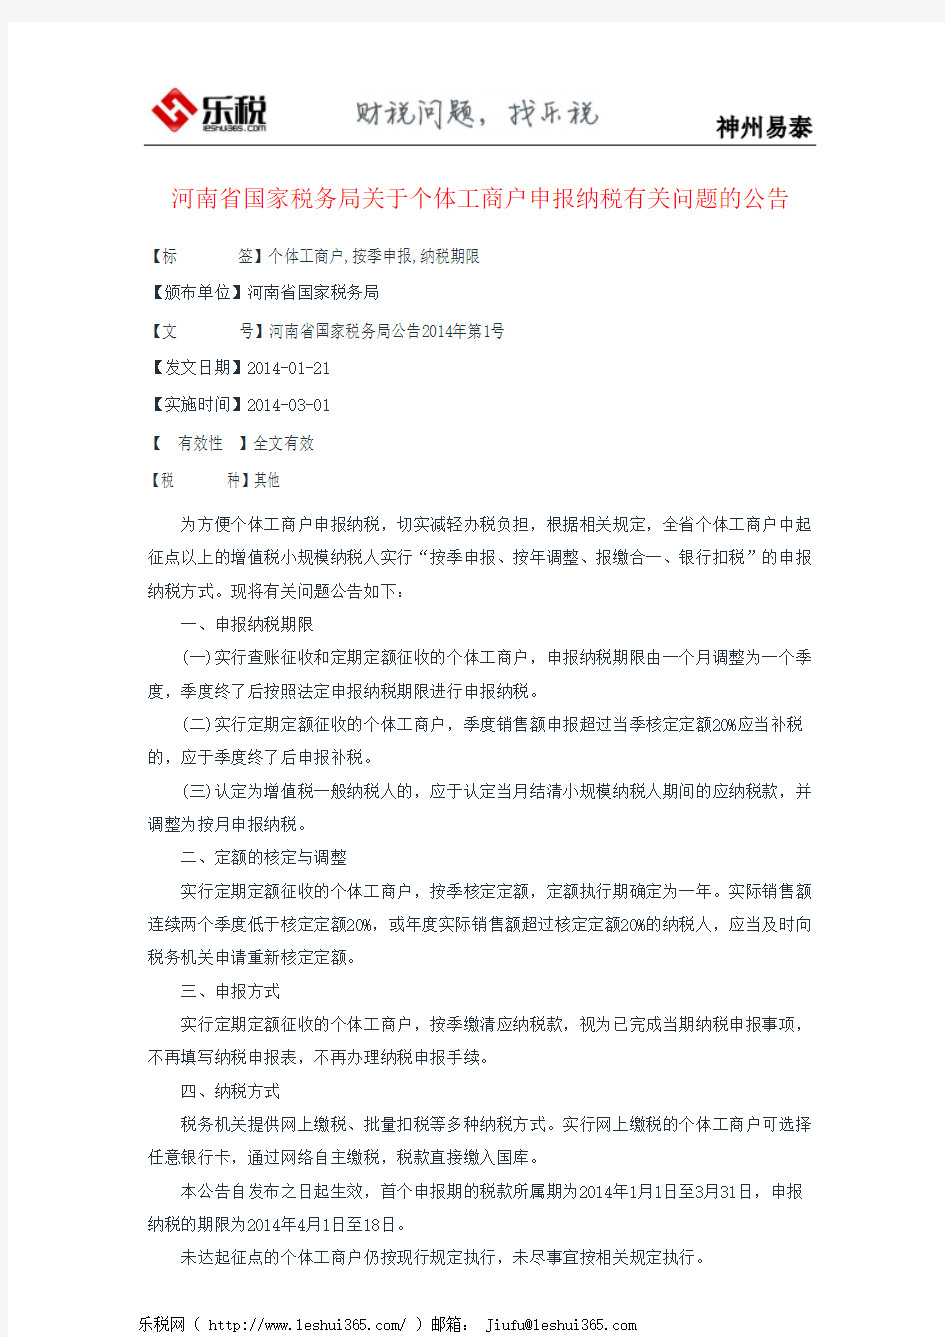 河南省国家税务局关于个体工商户申报纳税有关问题的公告